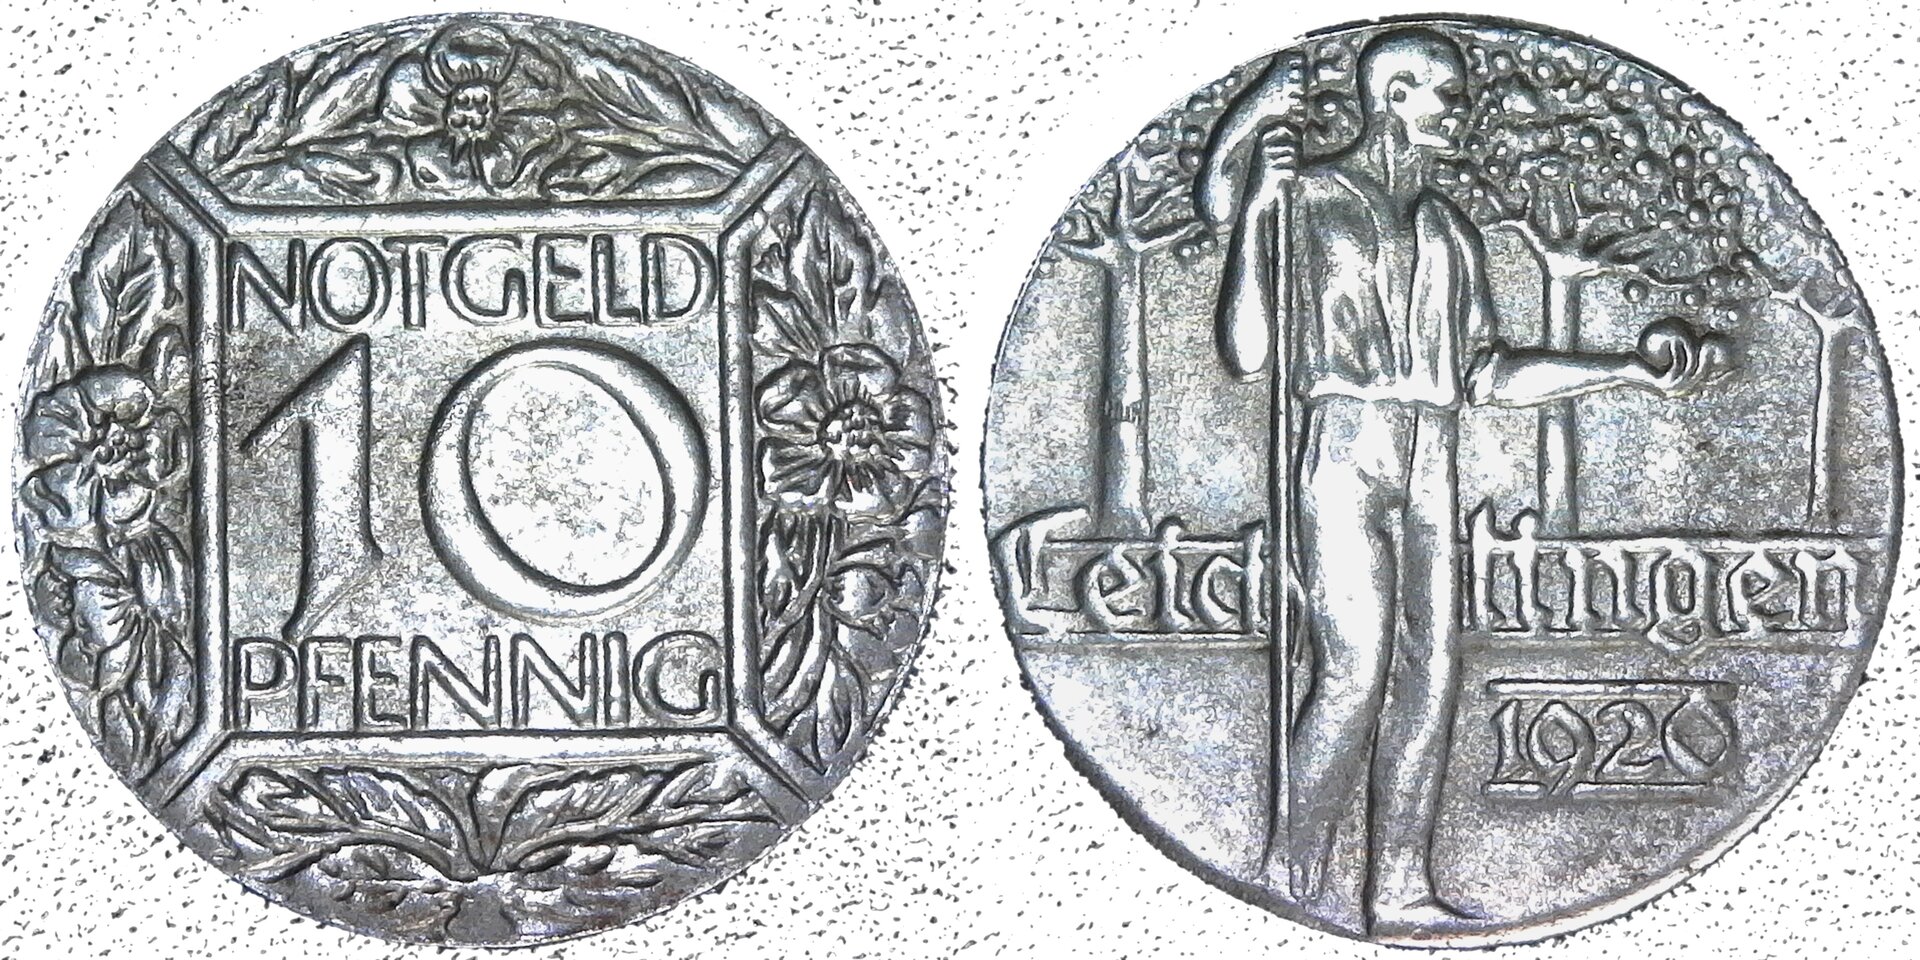 Germany Leichlingen 10 Pfennig Notgeld 1920 rev-side-cutout.jpg